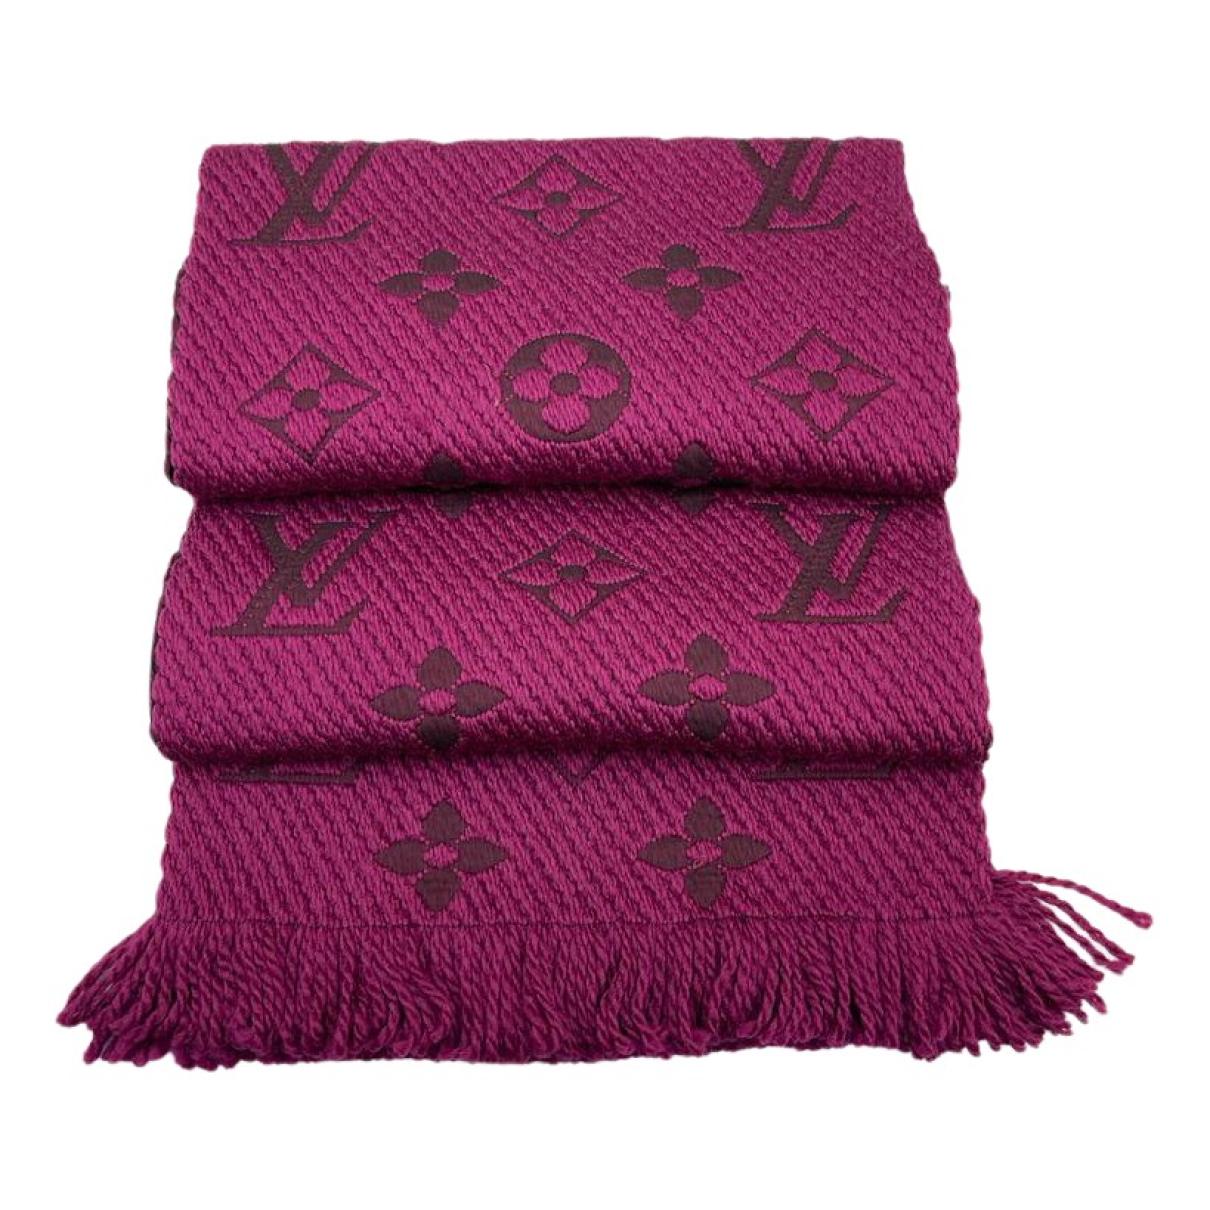 Logomania wool scarf Louis Vuitton Blue in Wool - 37562608